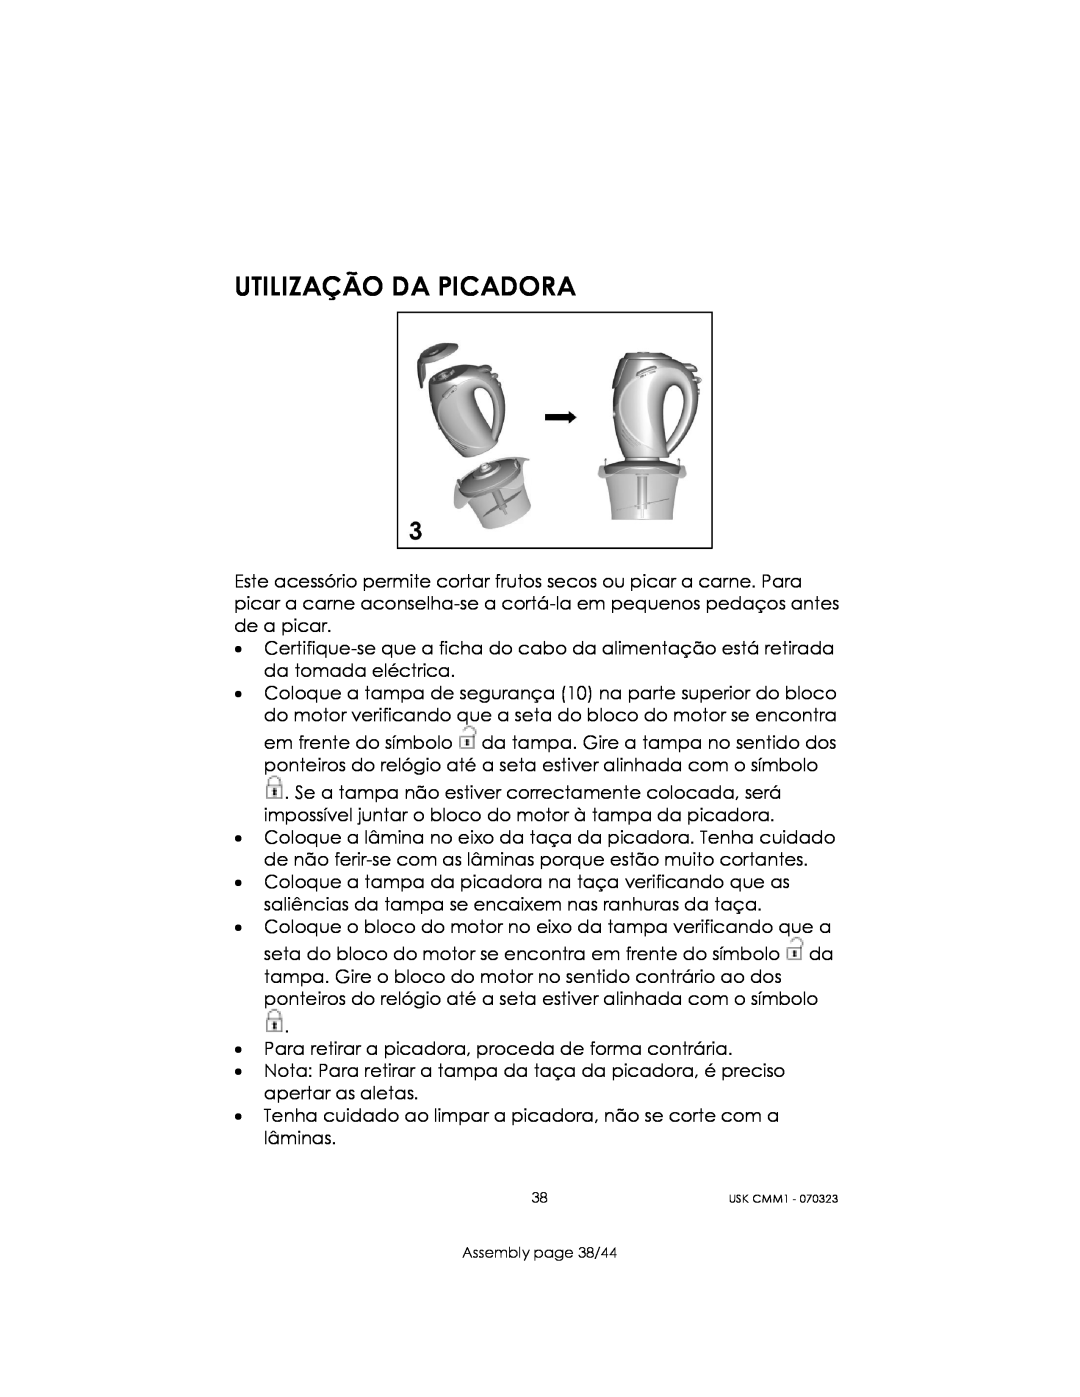 Kalorik USK CMM 1 manual Utilização Da Picadora, Assembly page 38/44 